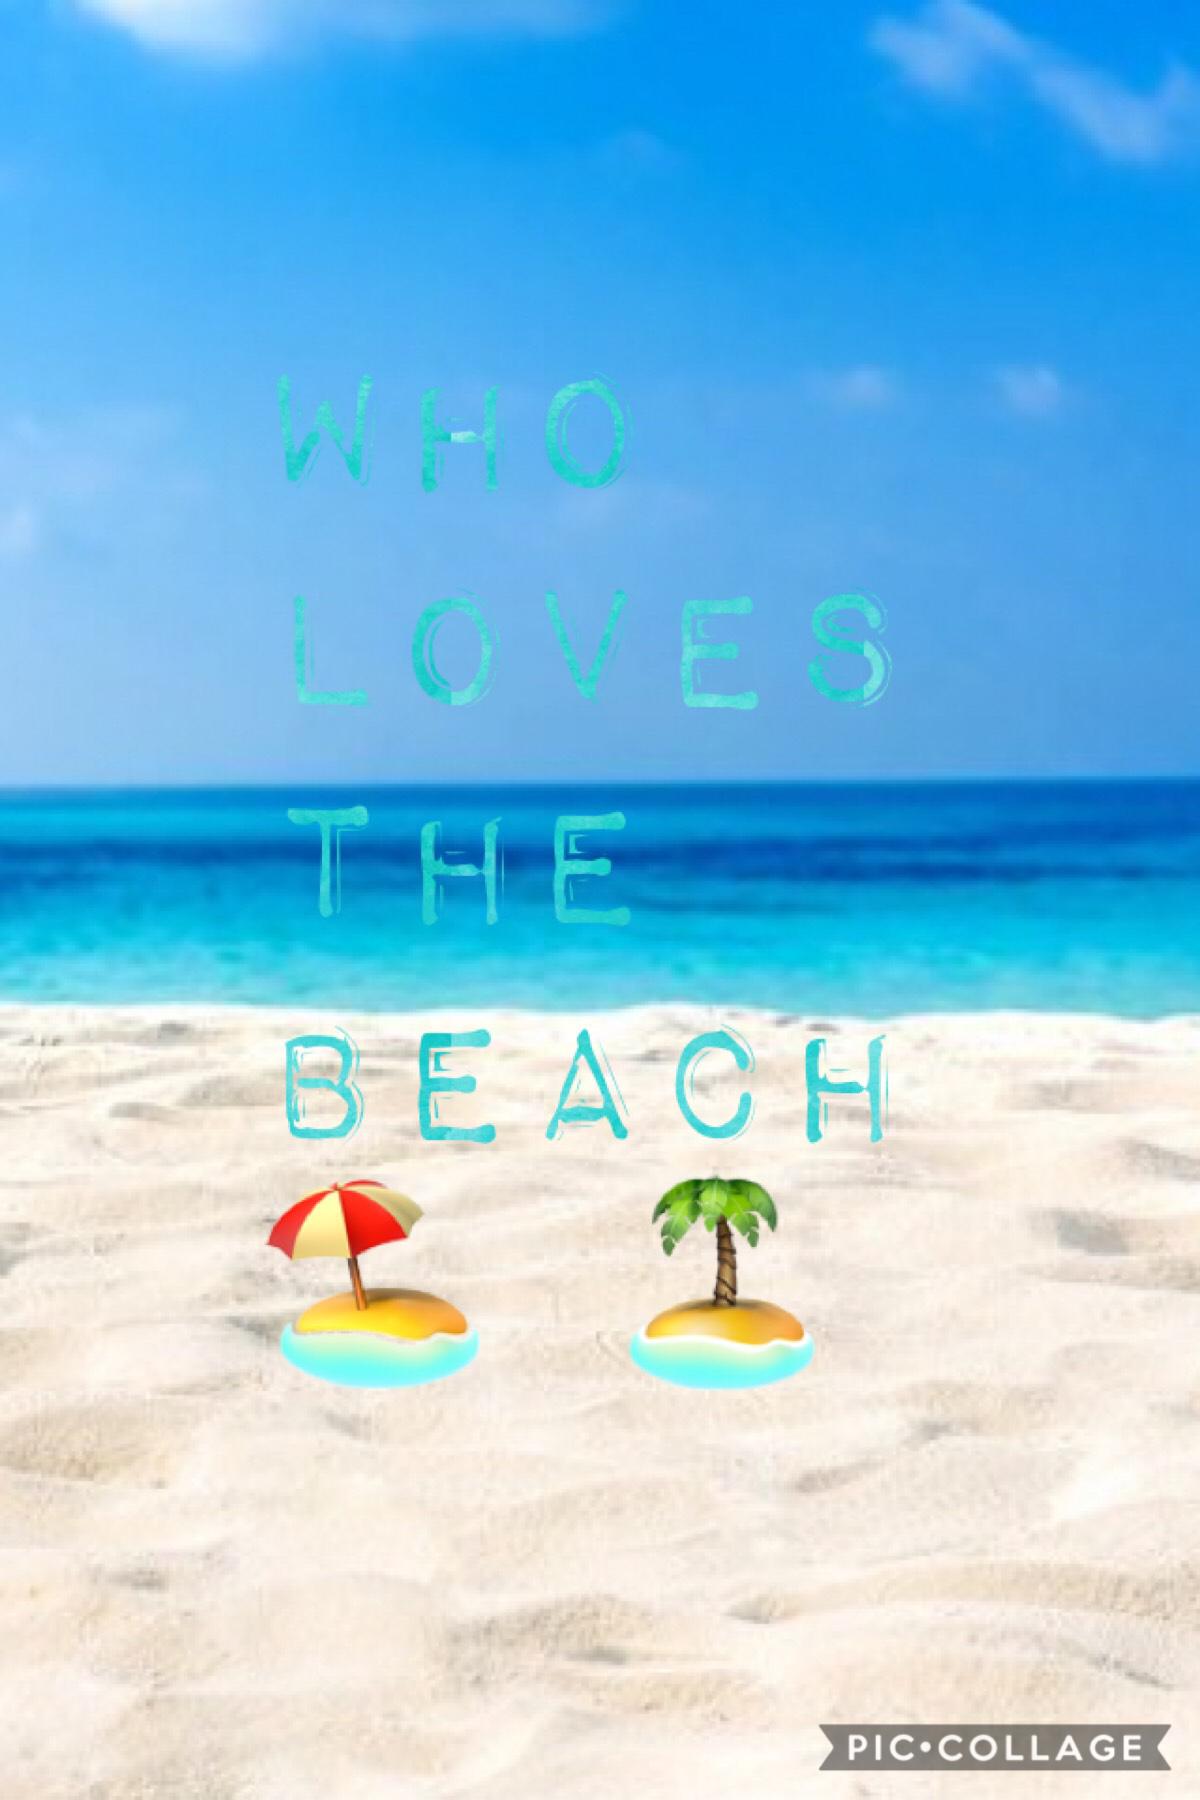 Do you like the beach 